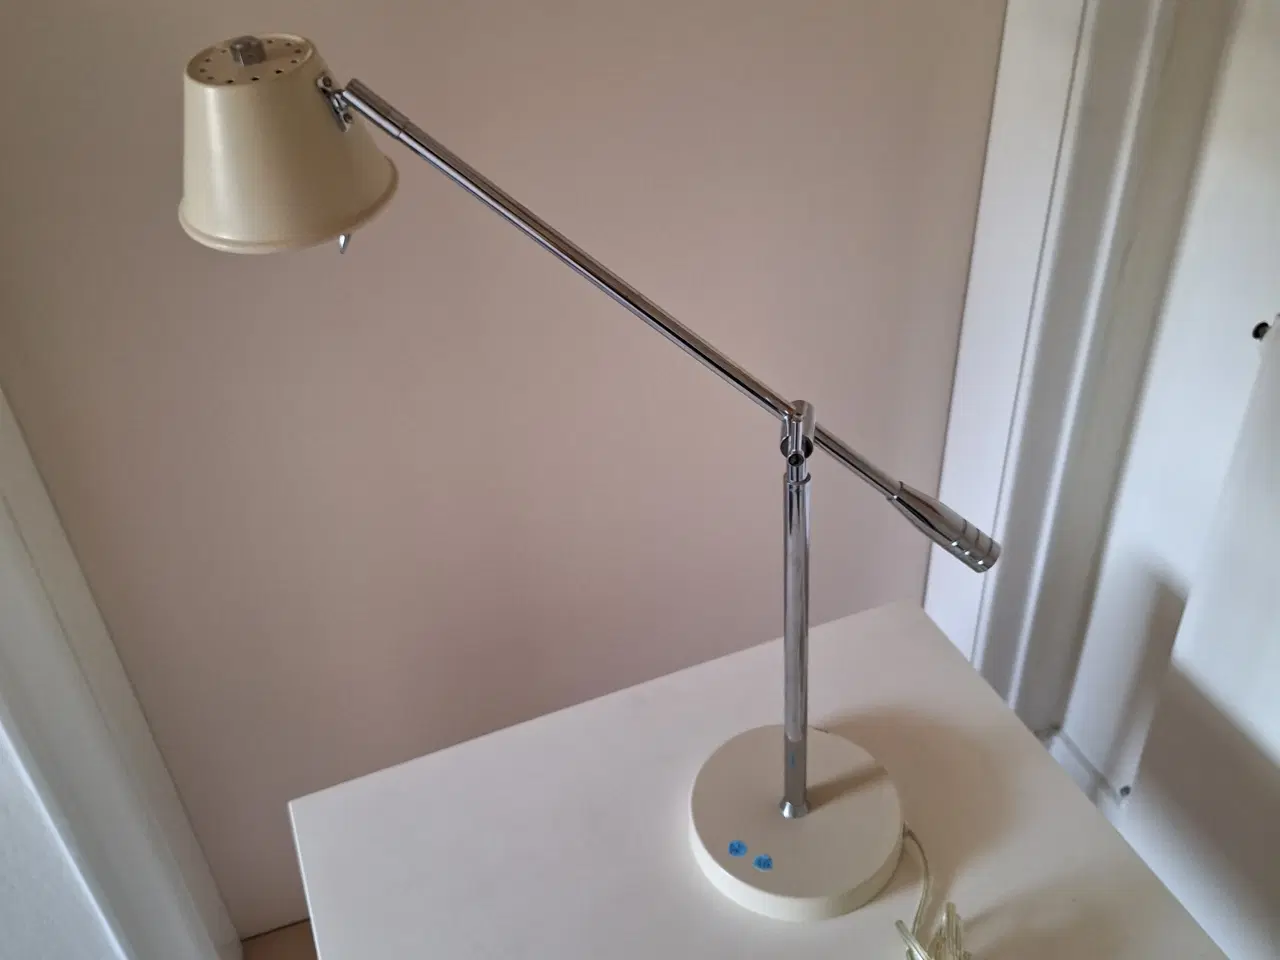 Billede 2 - Bordlampe, arbejdslampe. 